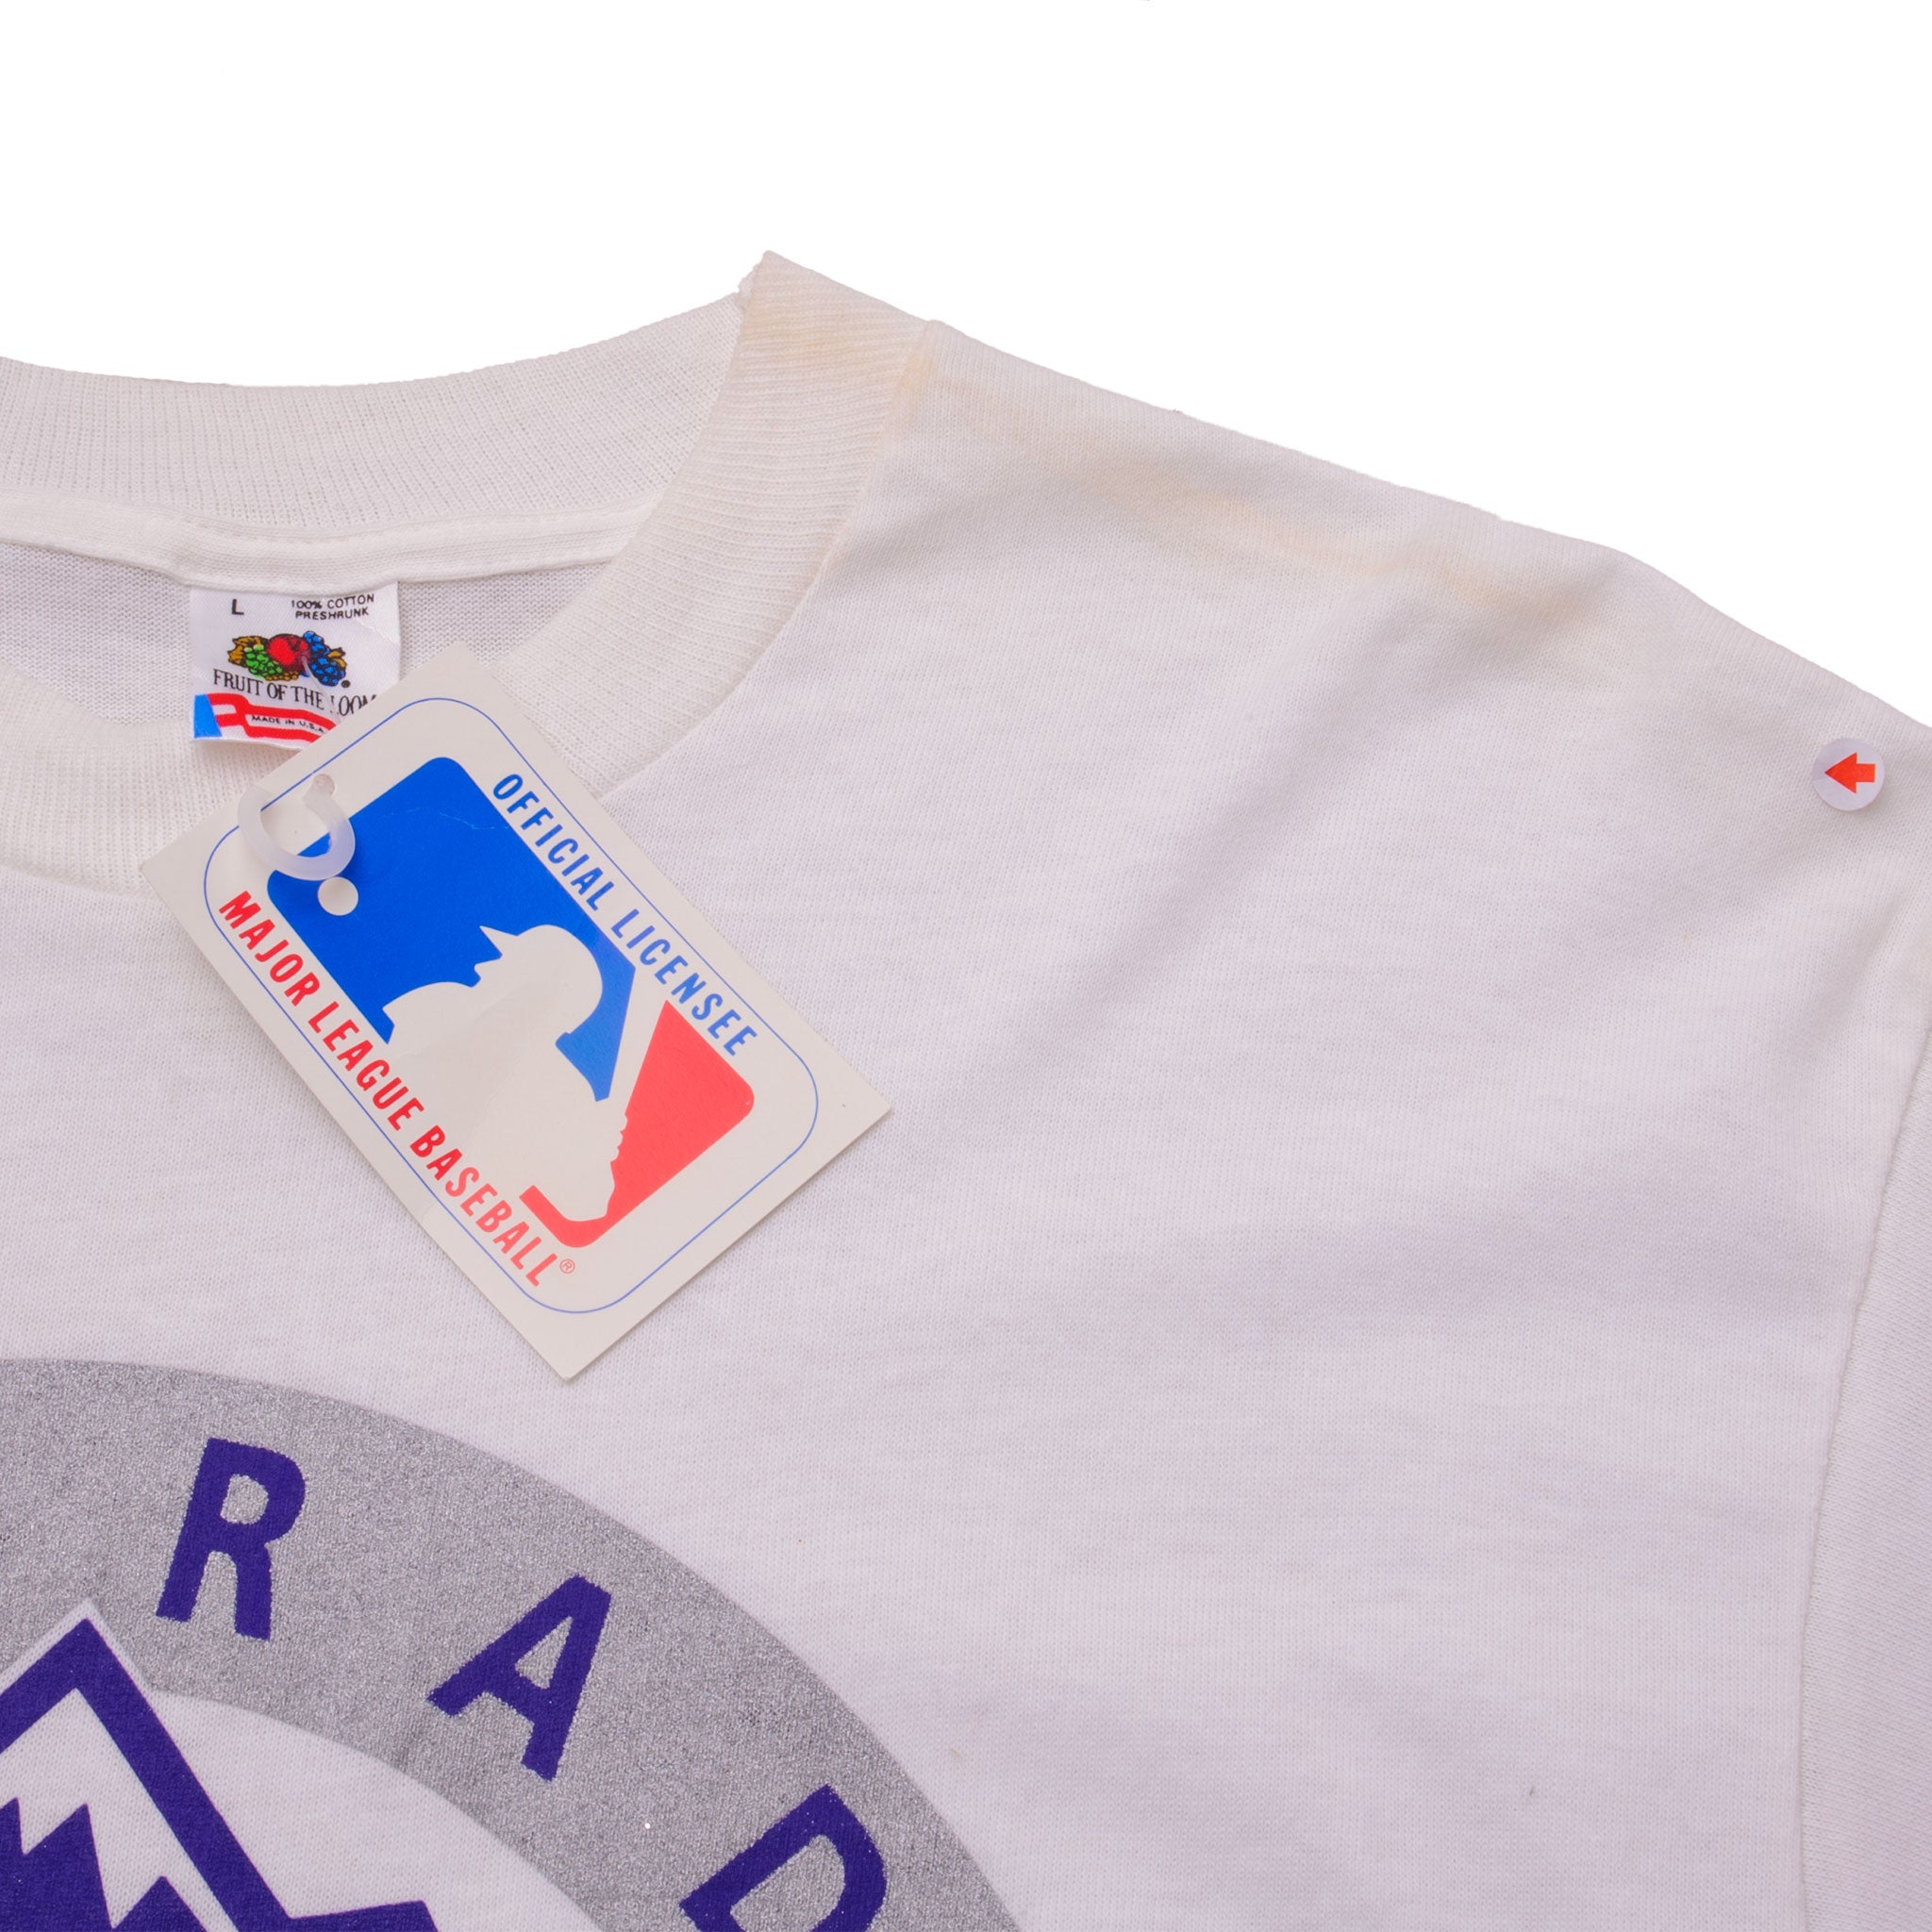 New Vintage Colorado rockies T-shirt Made In 1994 Tshirt Tee Shirt MLB 90’s  VTG